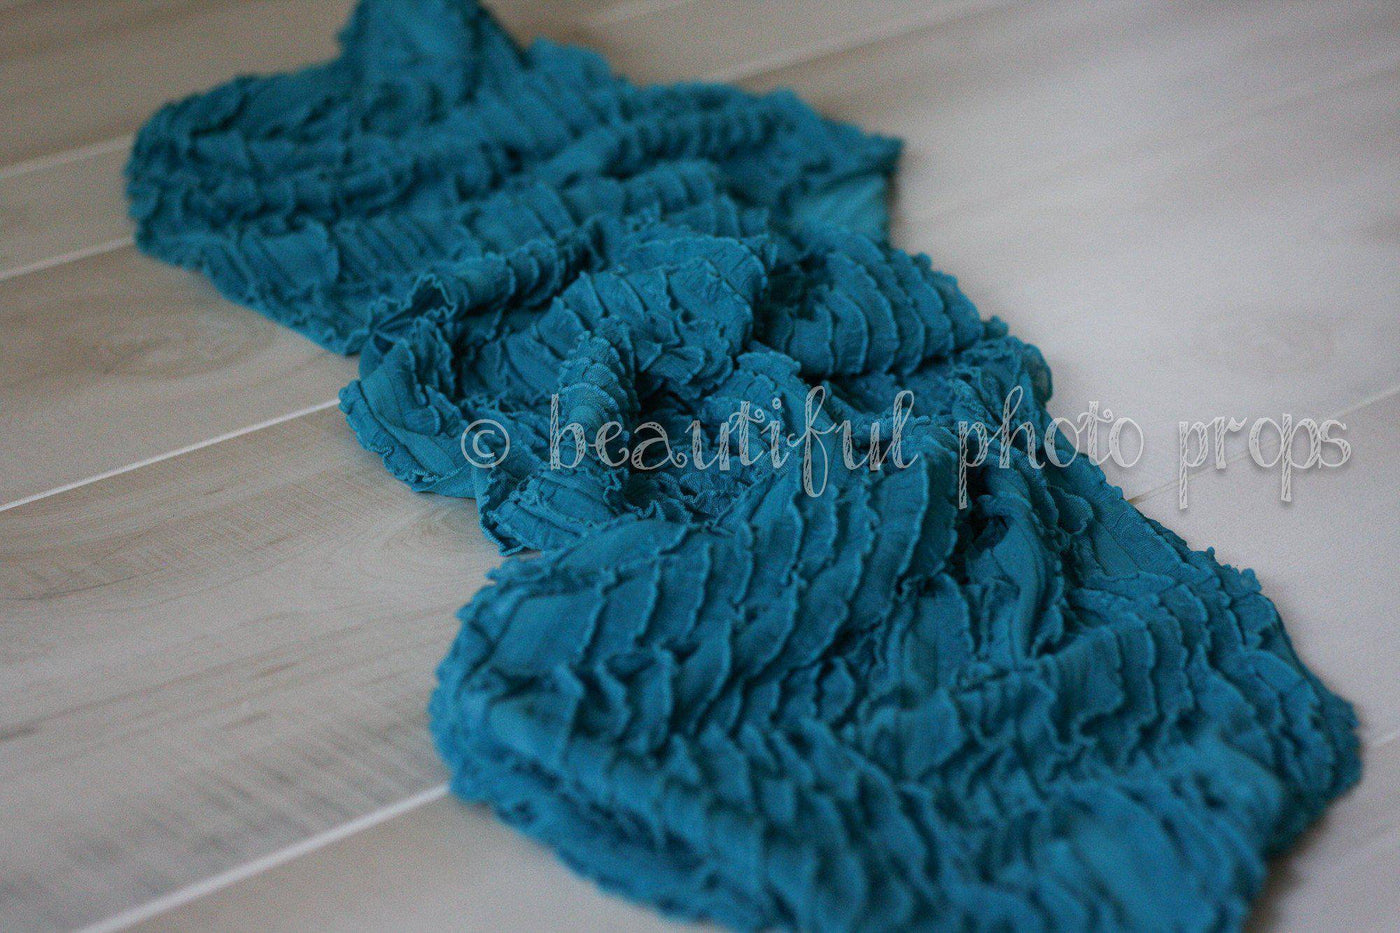 SET 6 Piece Lace Ruffle Stretch Knit Wrap Layering Set - Beautiful Photo Props